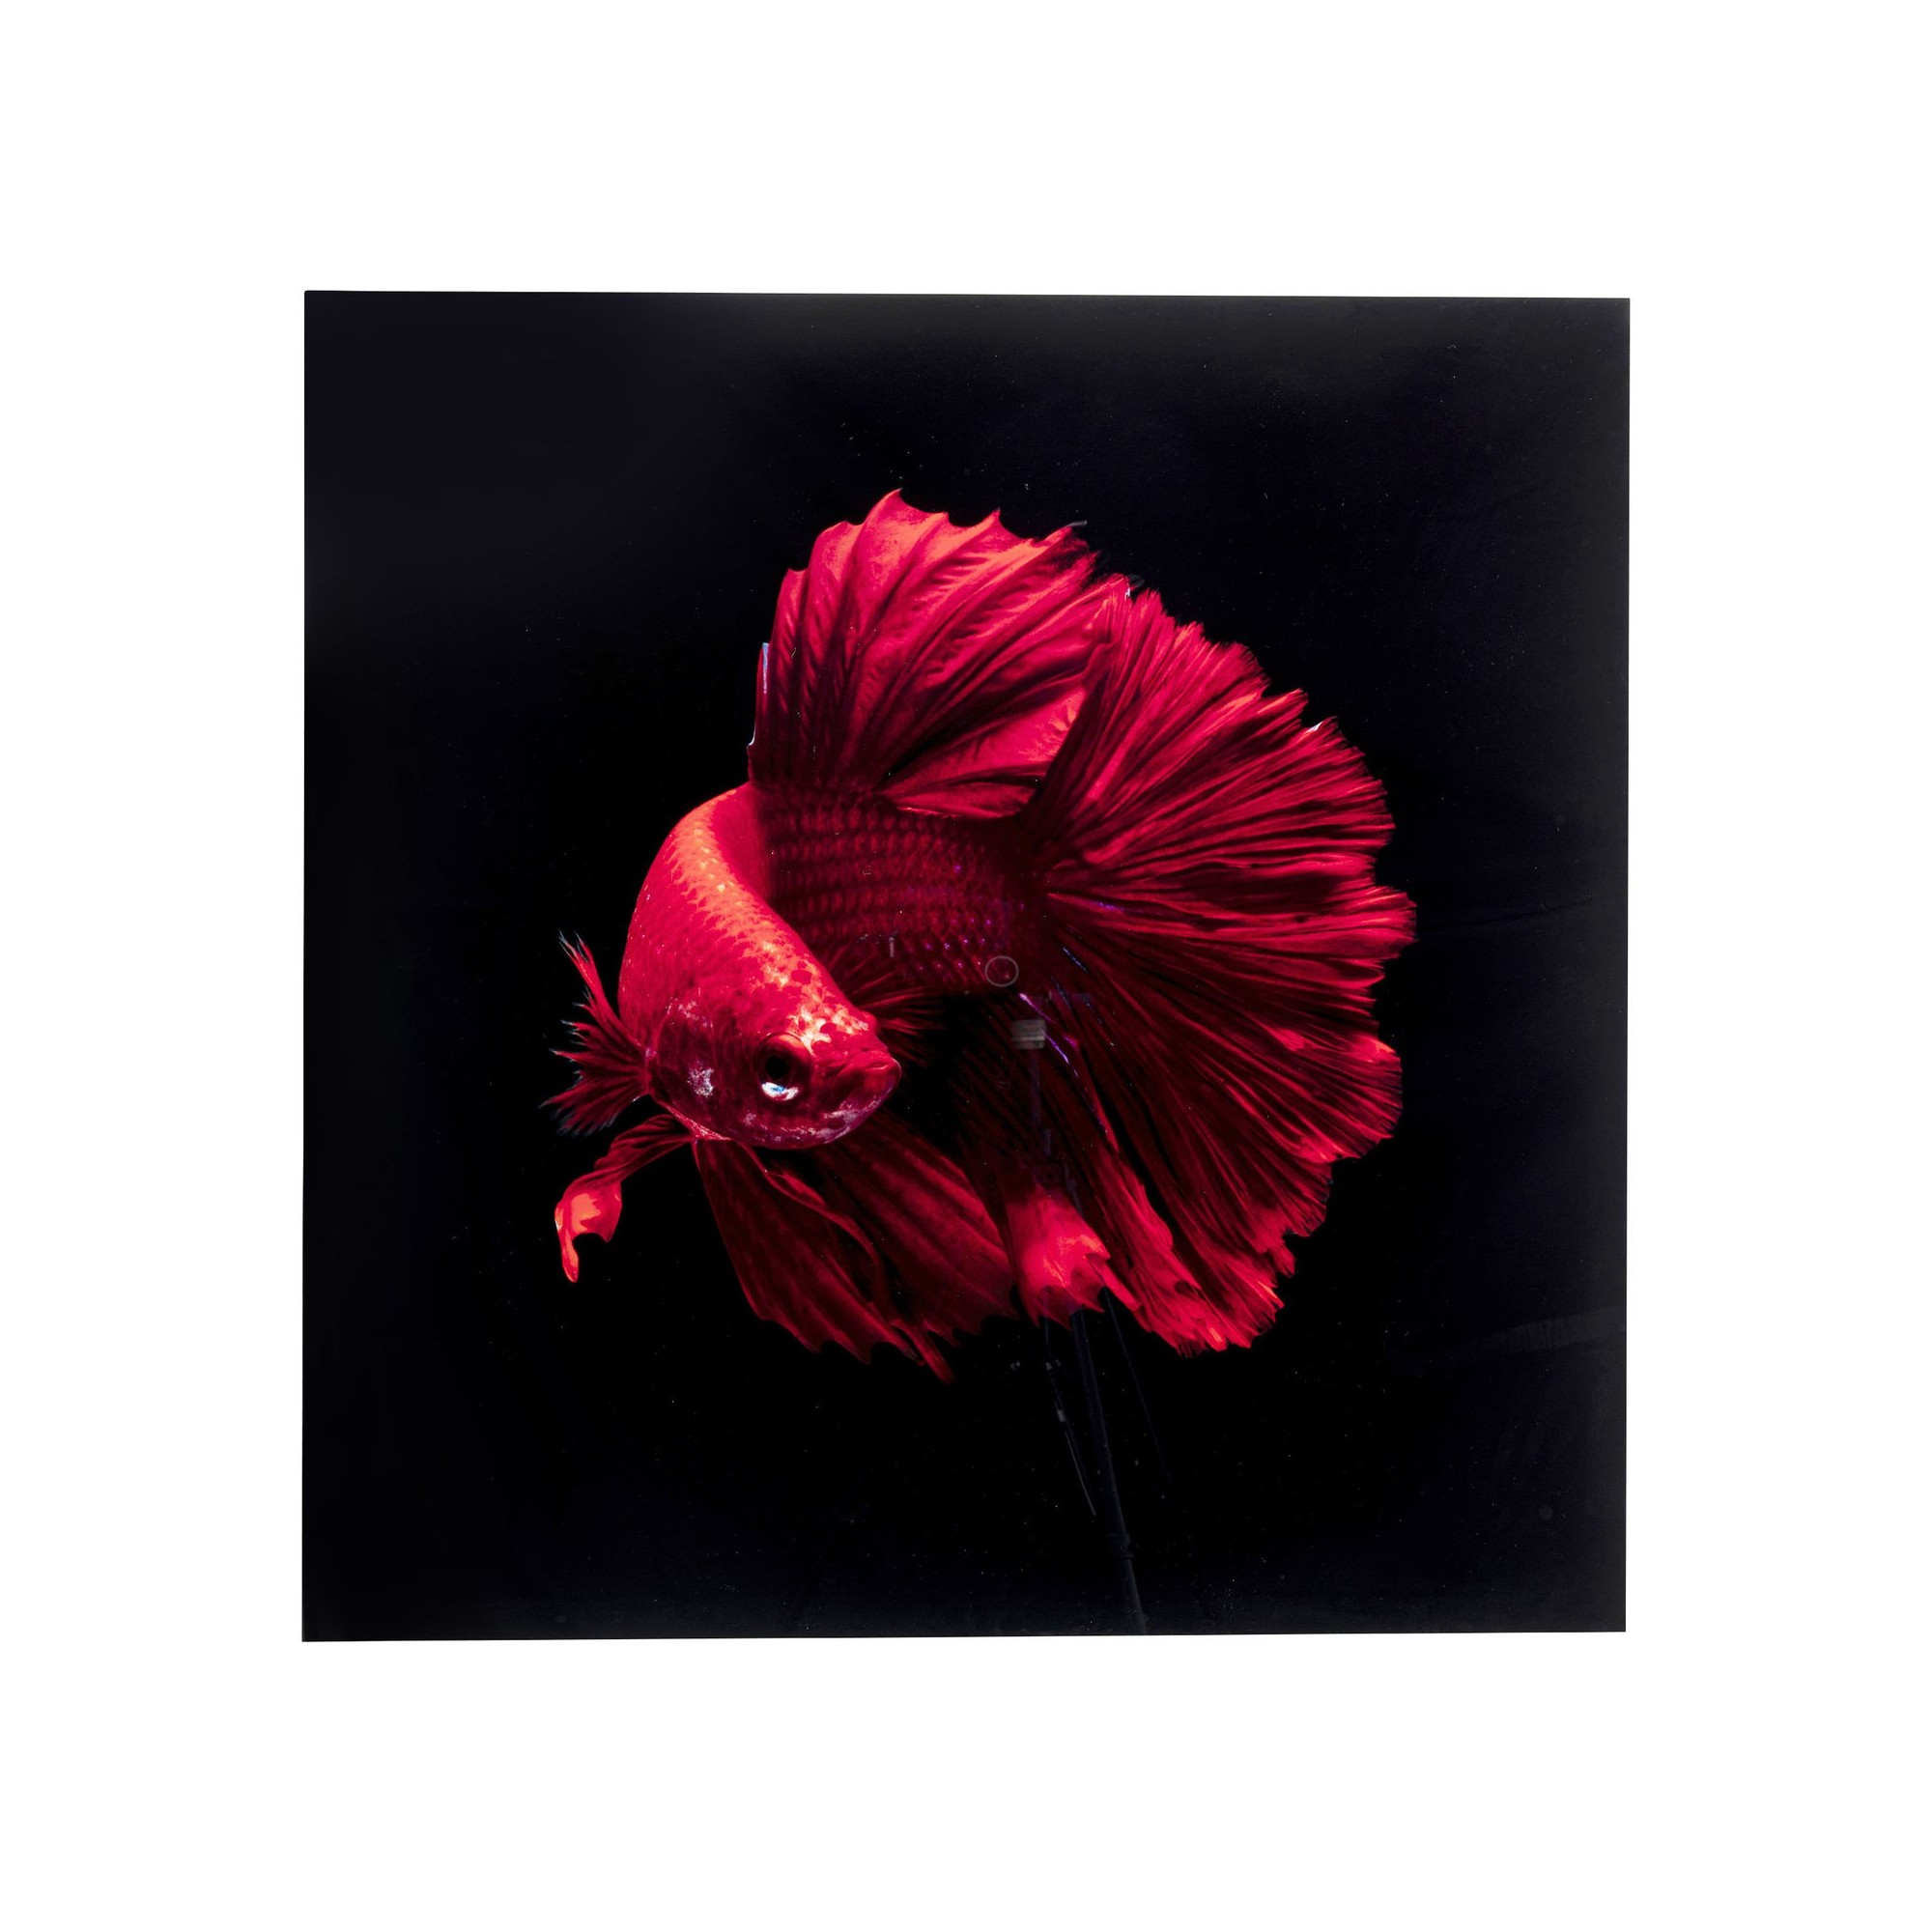 Tableau en verre poisson rouge 100x100cm Kare Design